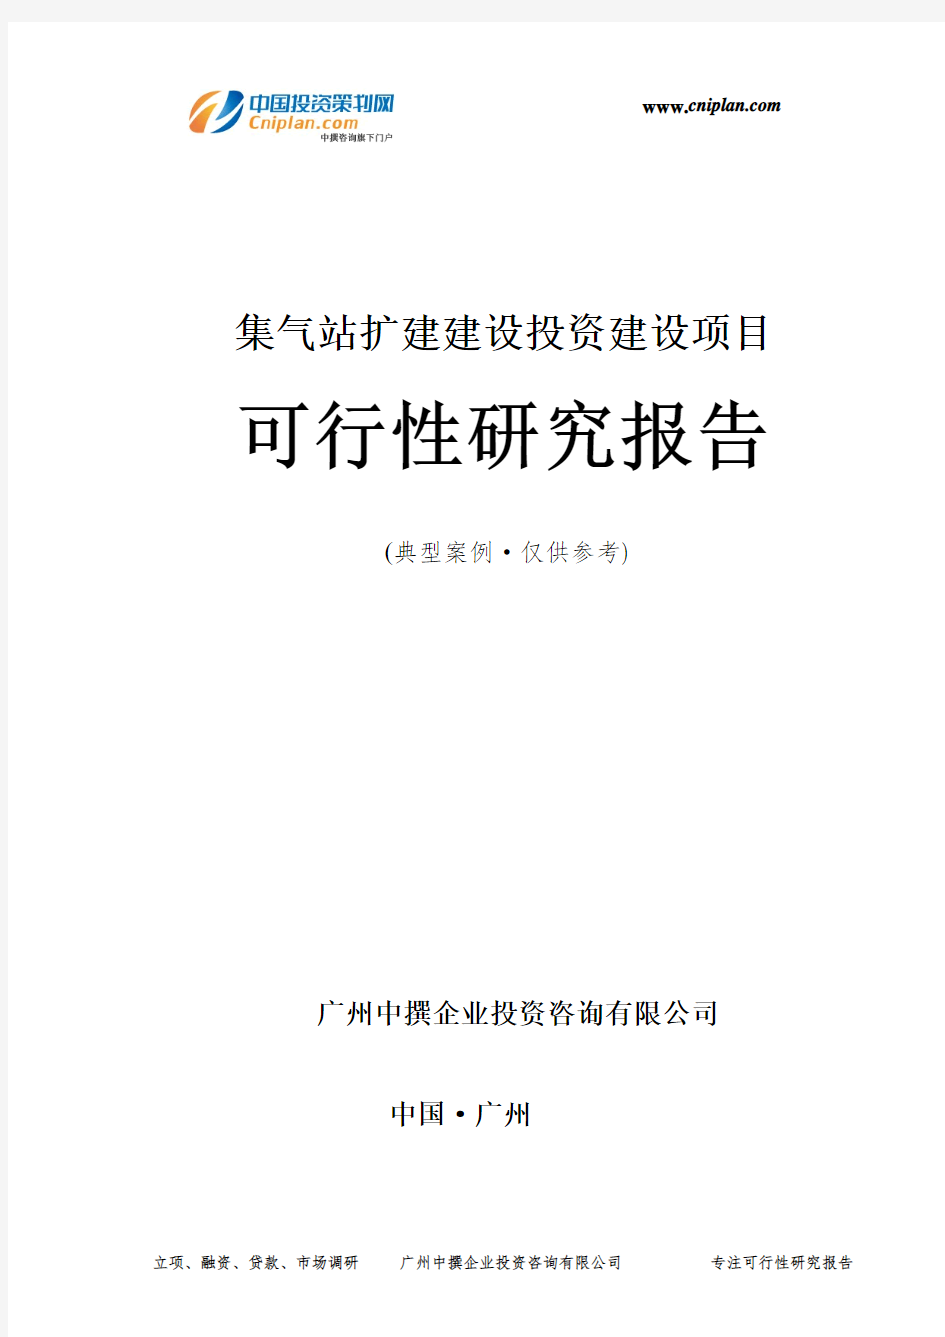 集气站扩建建设投资建设项目可行性研究报告-广州中撰咨询